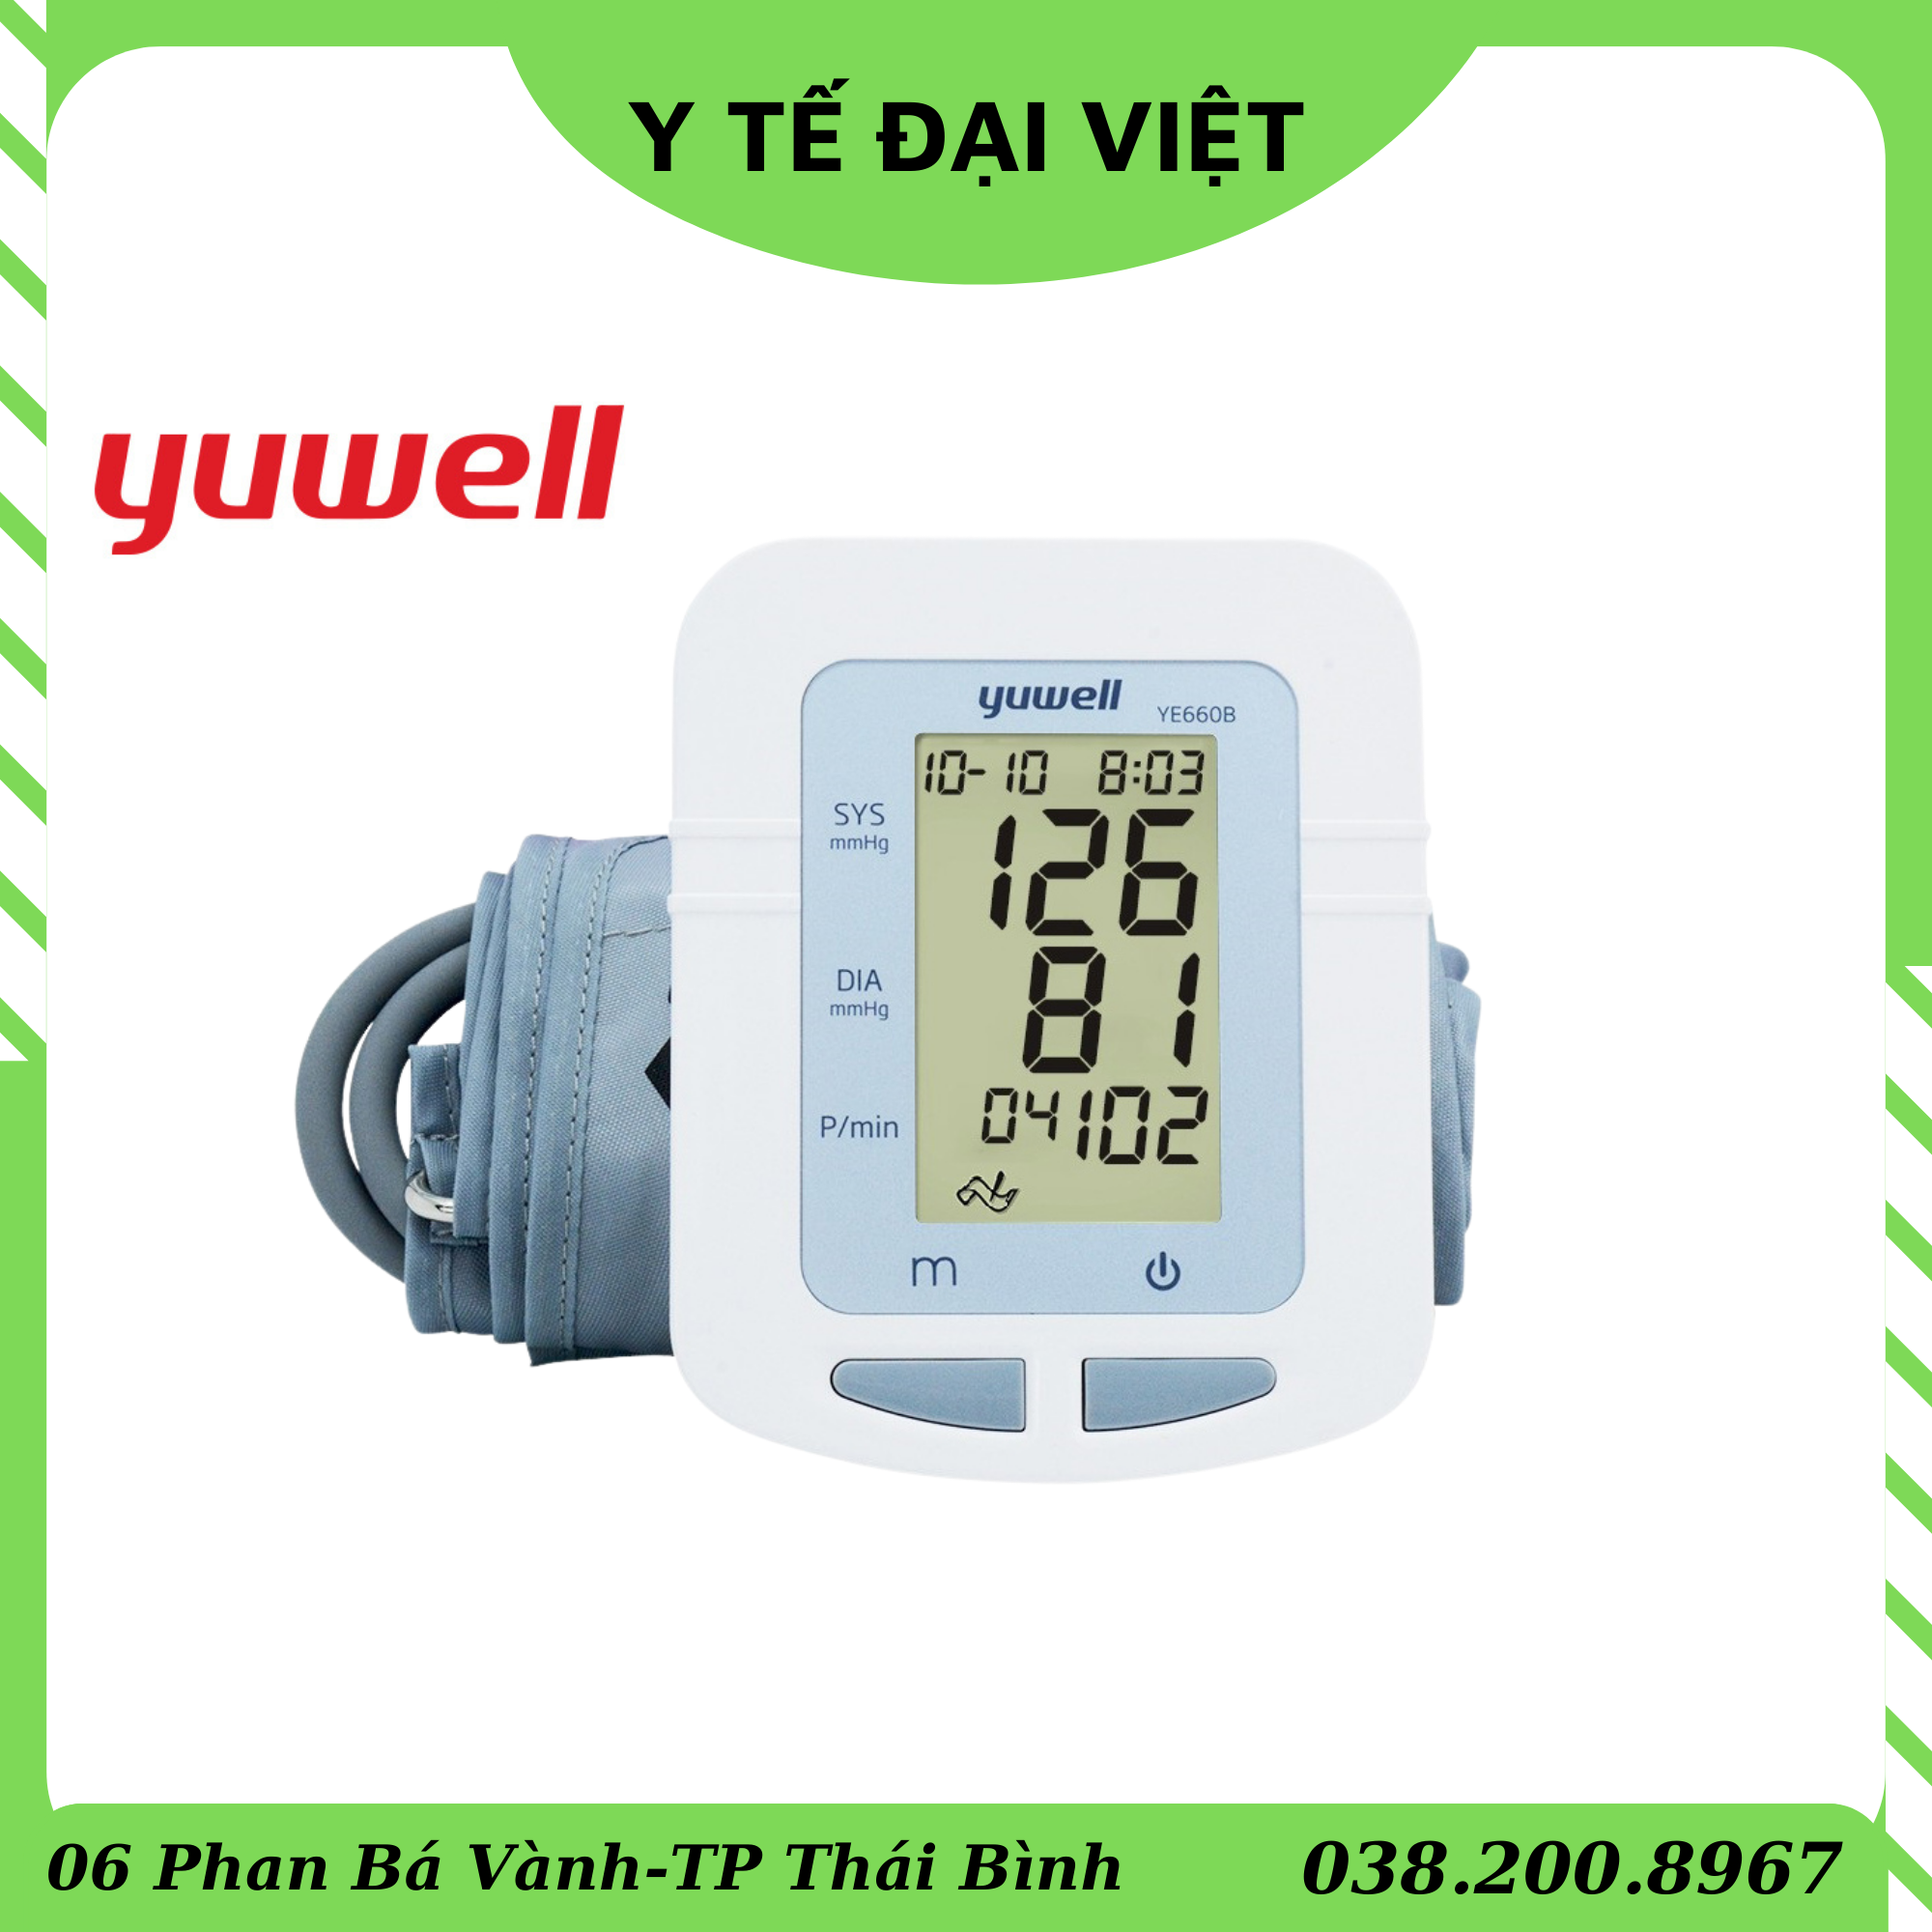 Máy đo huyết áp bắp tay YUWELL YE660B  YE 660B  chính hãng kèm sạc bảo